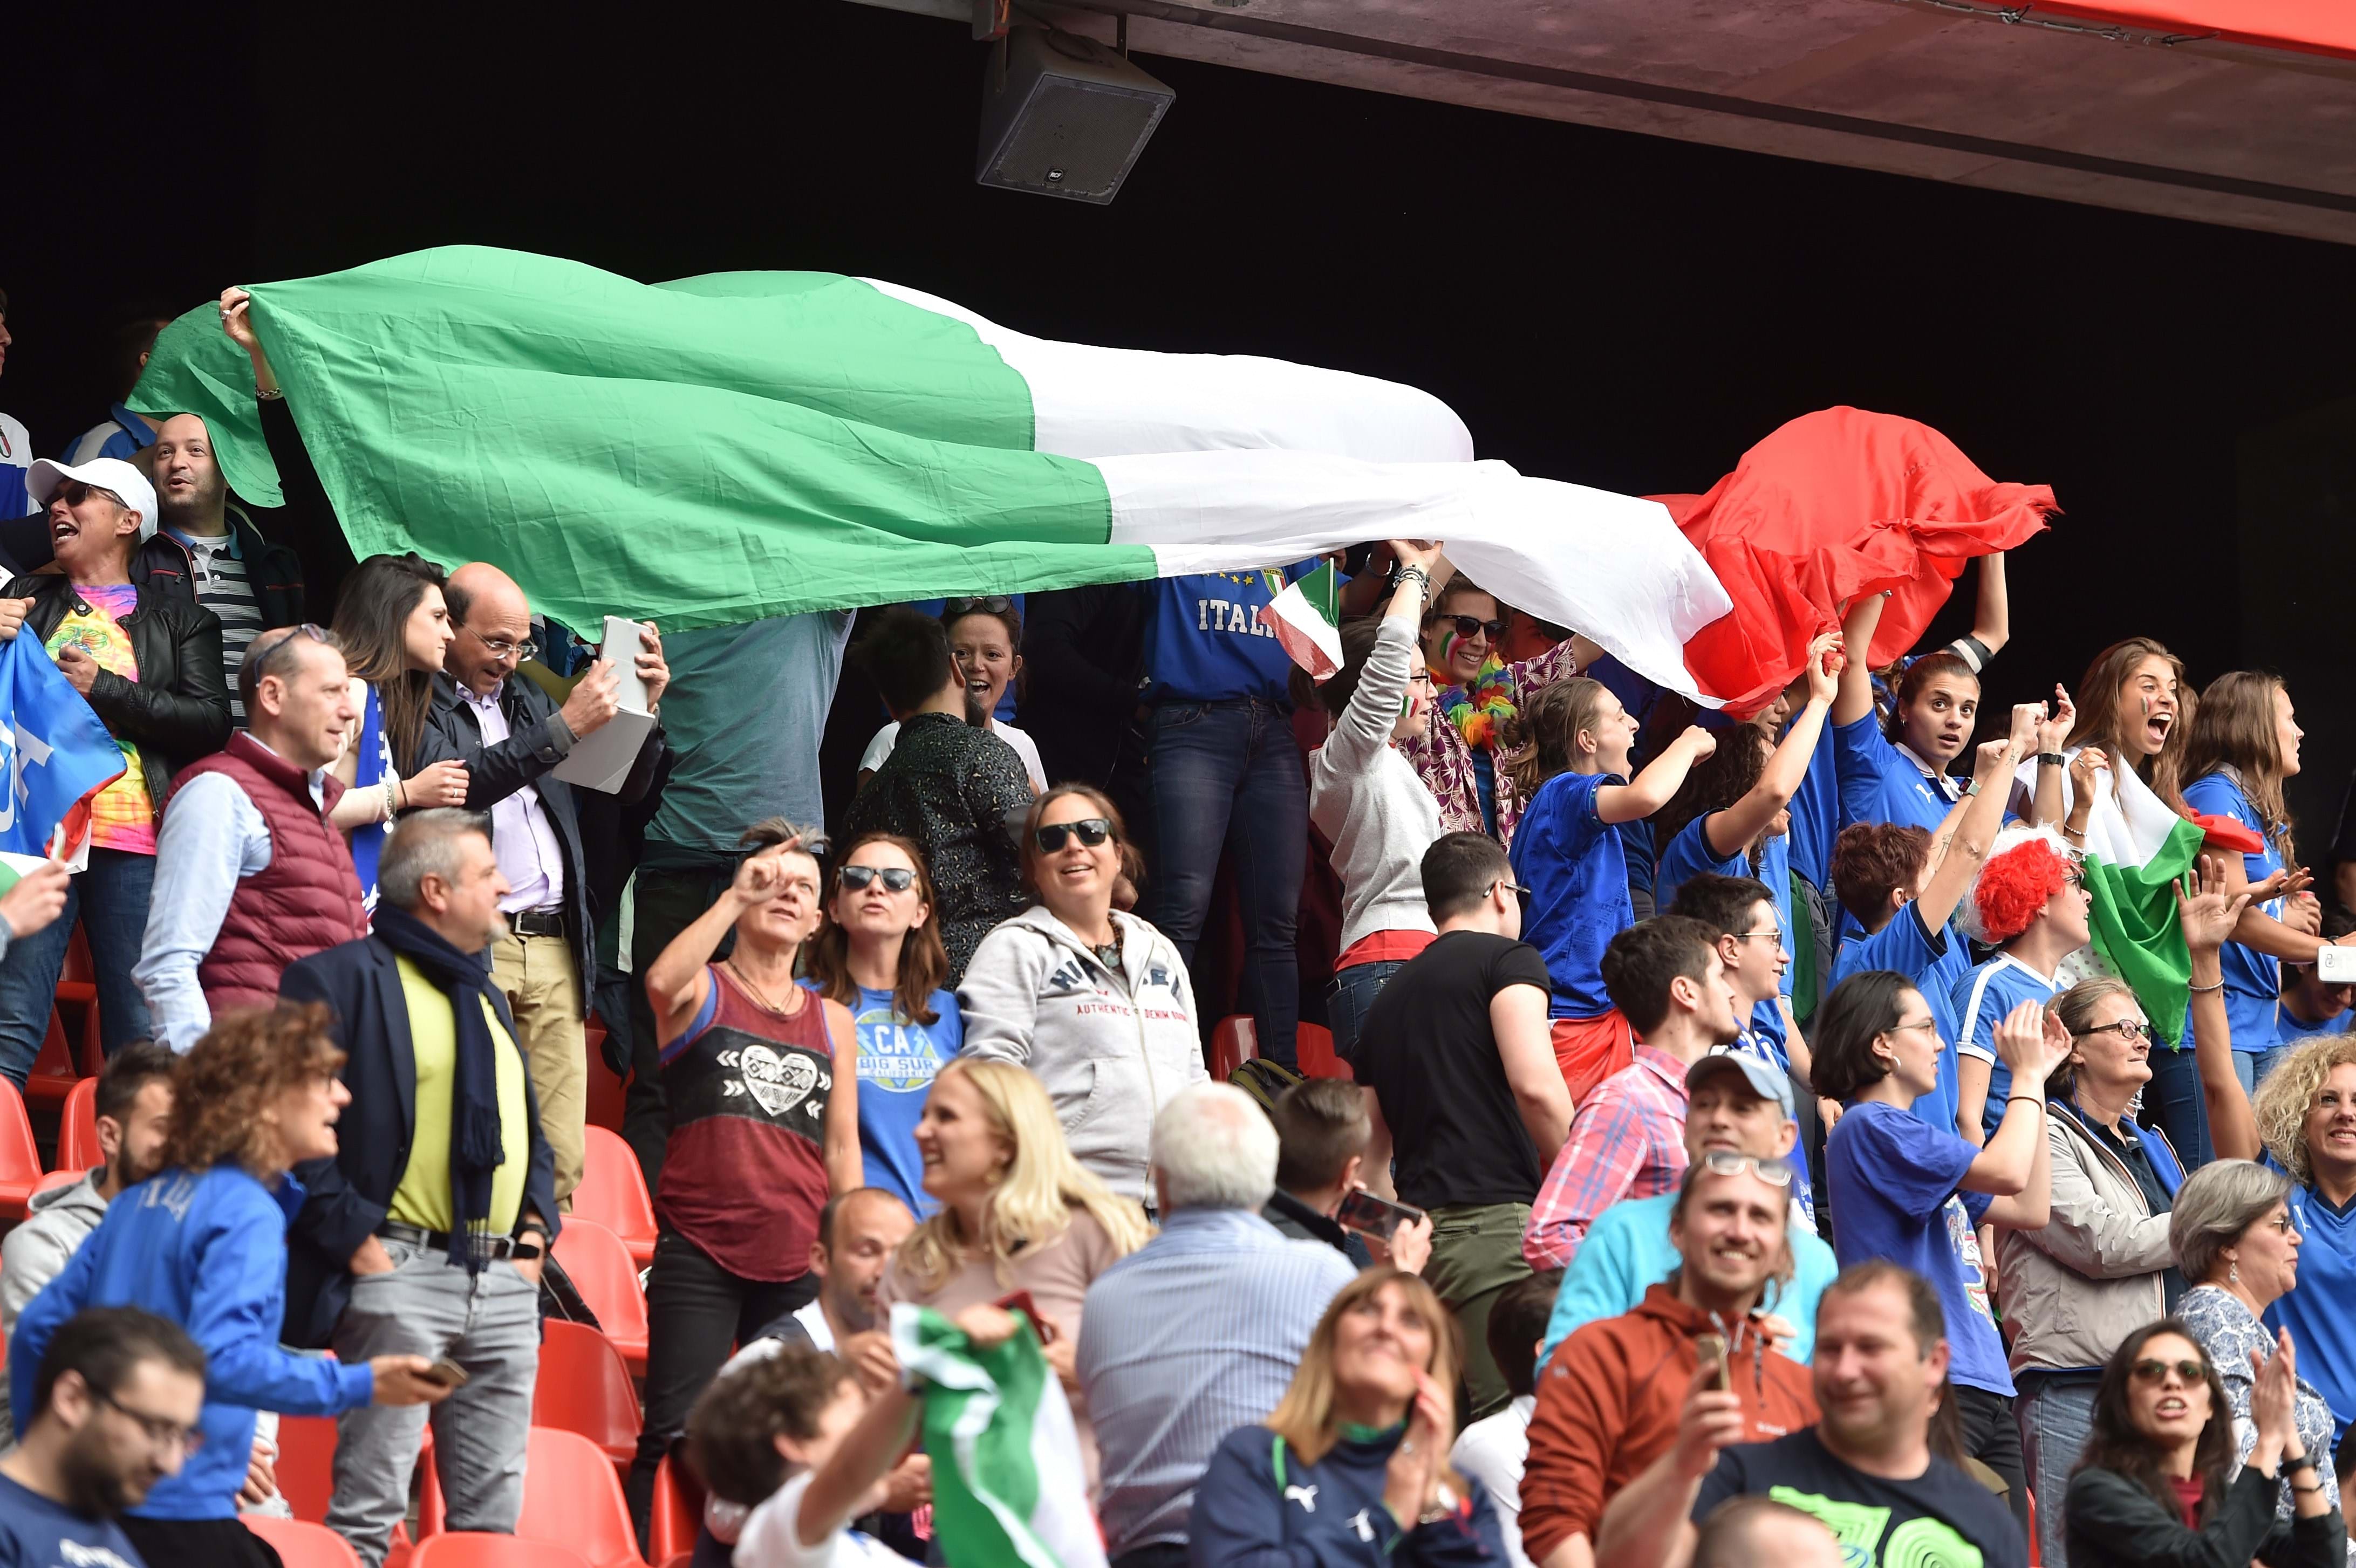 Free enty for Italy vs. Sweden in Castel di Sangro